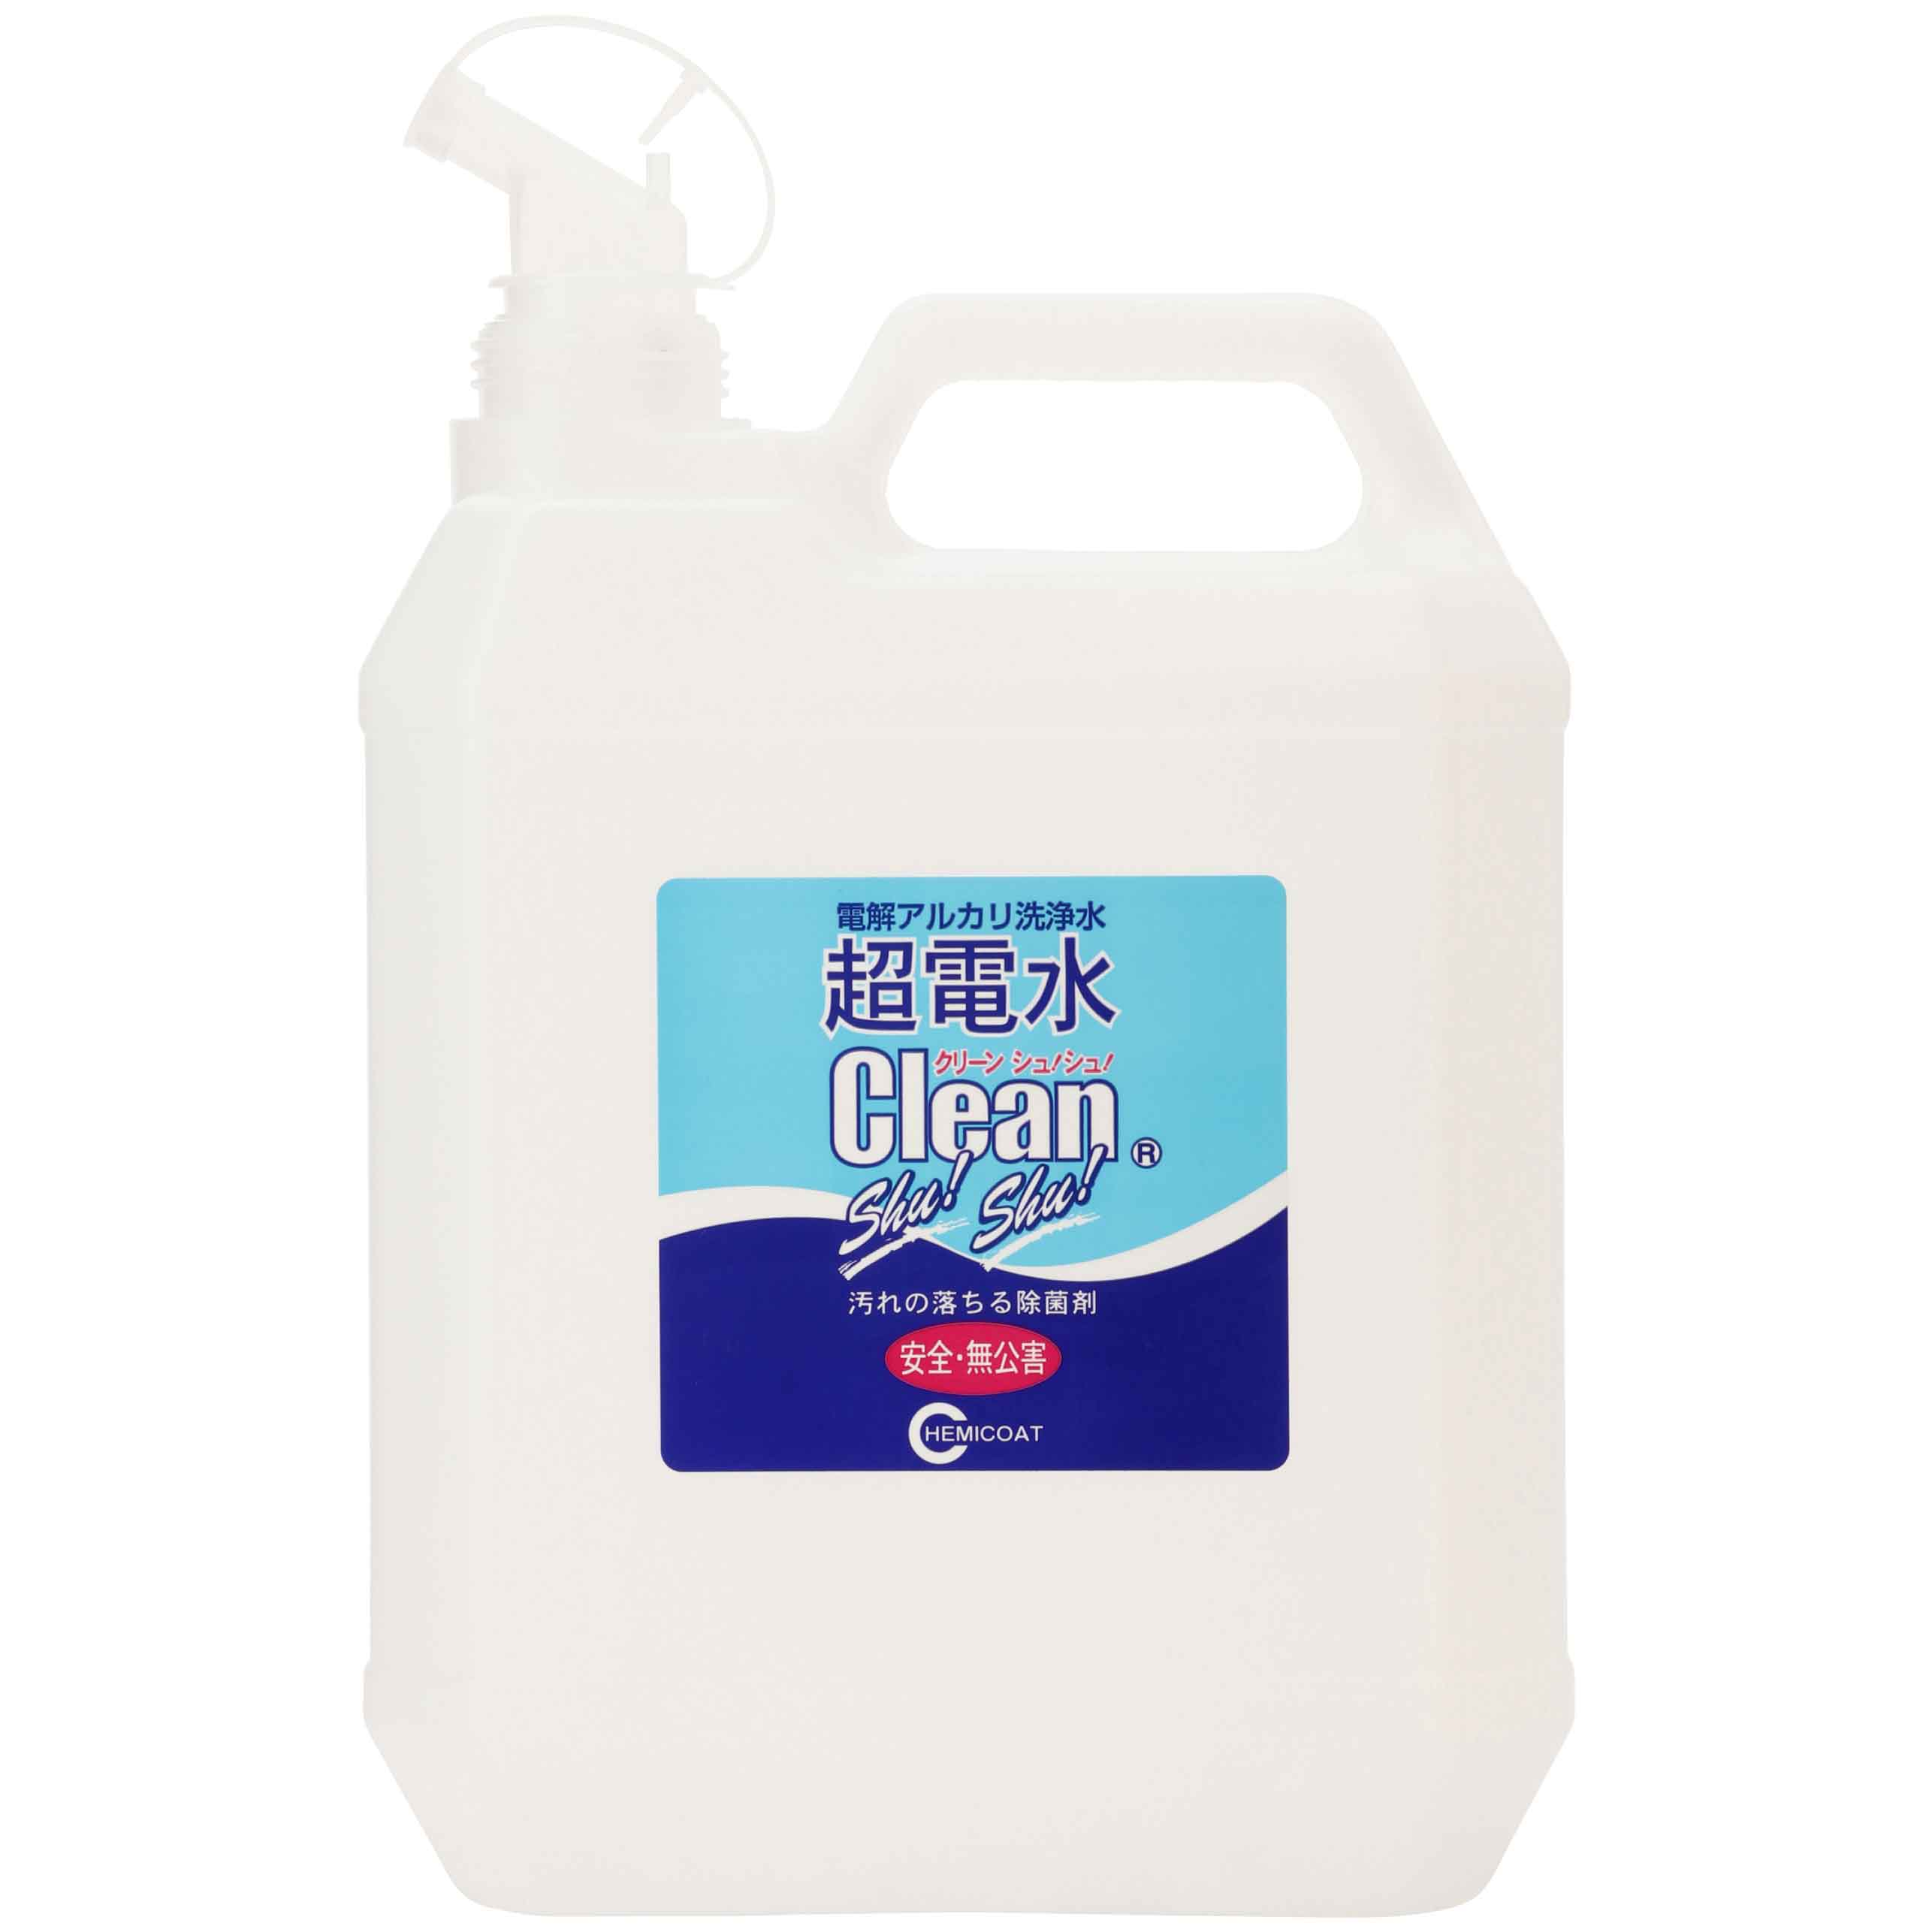 Nước ion siêu kiềm CEAN SHU! SHU! 4L Diệt khuẩn - Khử mùi - Làm sạch - Không hóa chất từ Nhật Bản